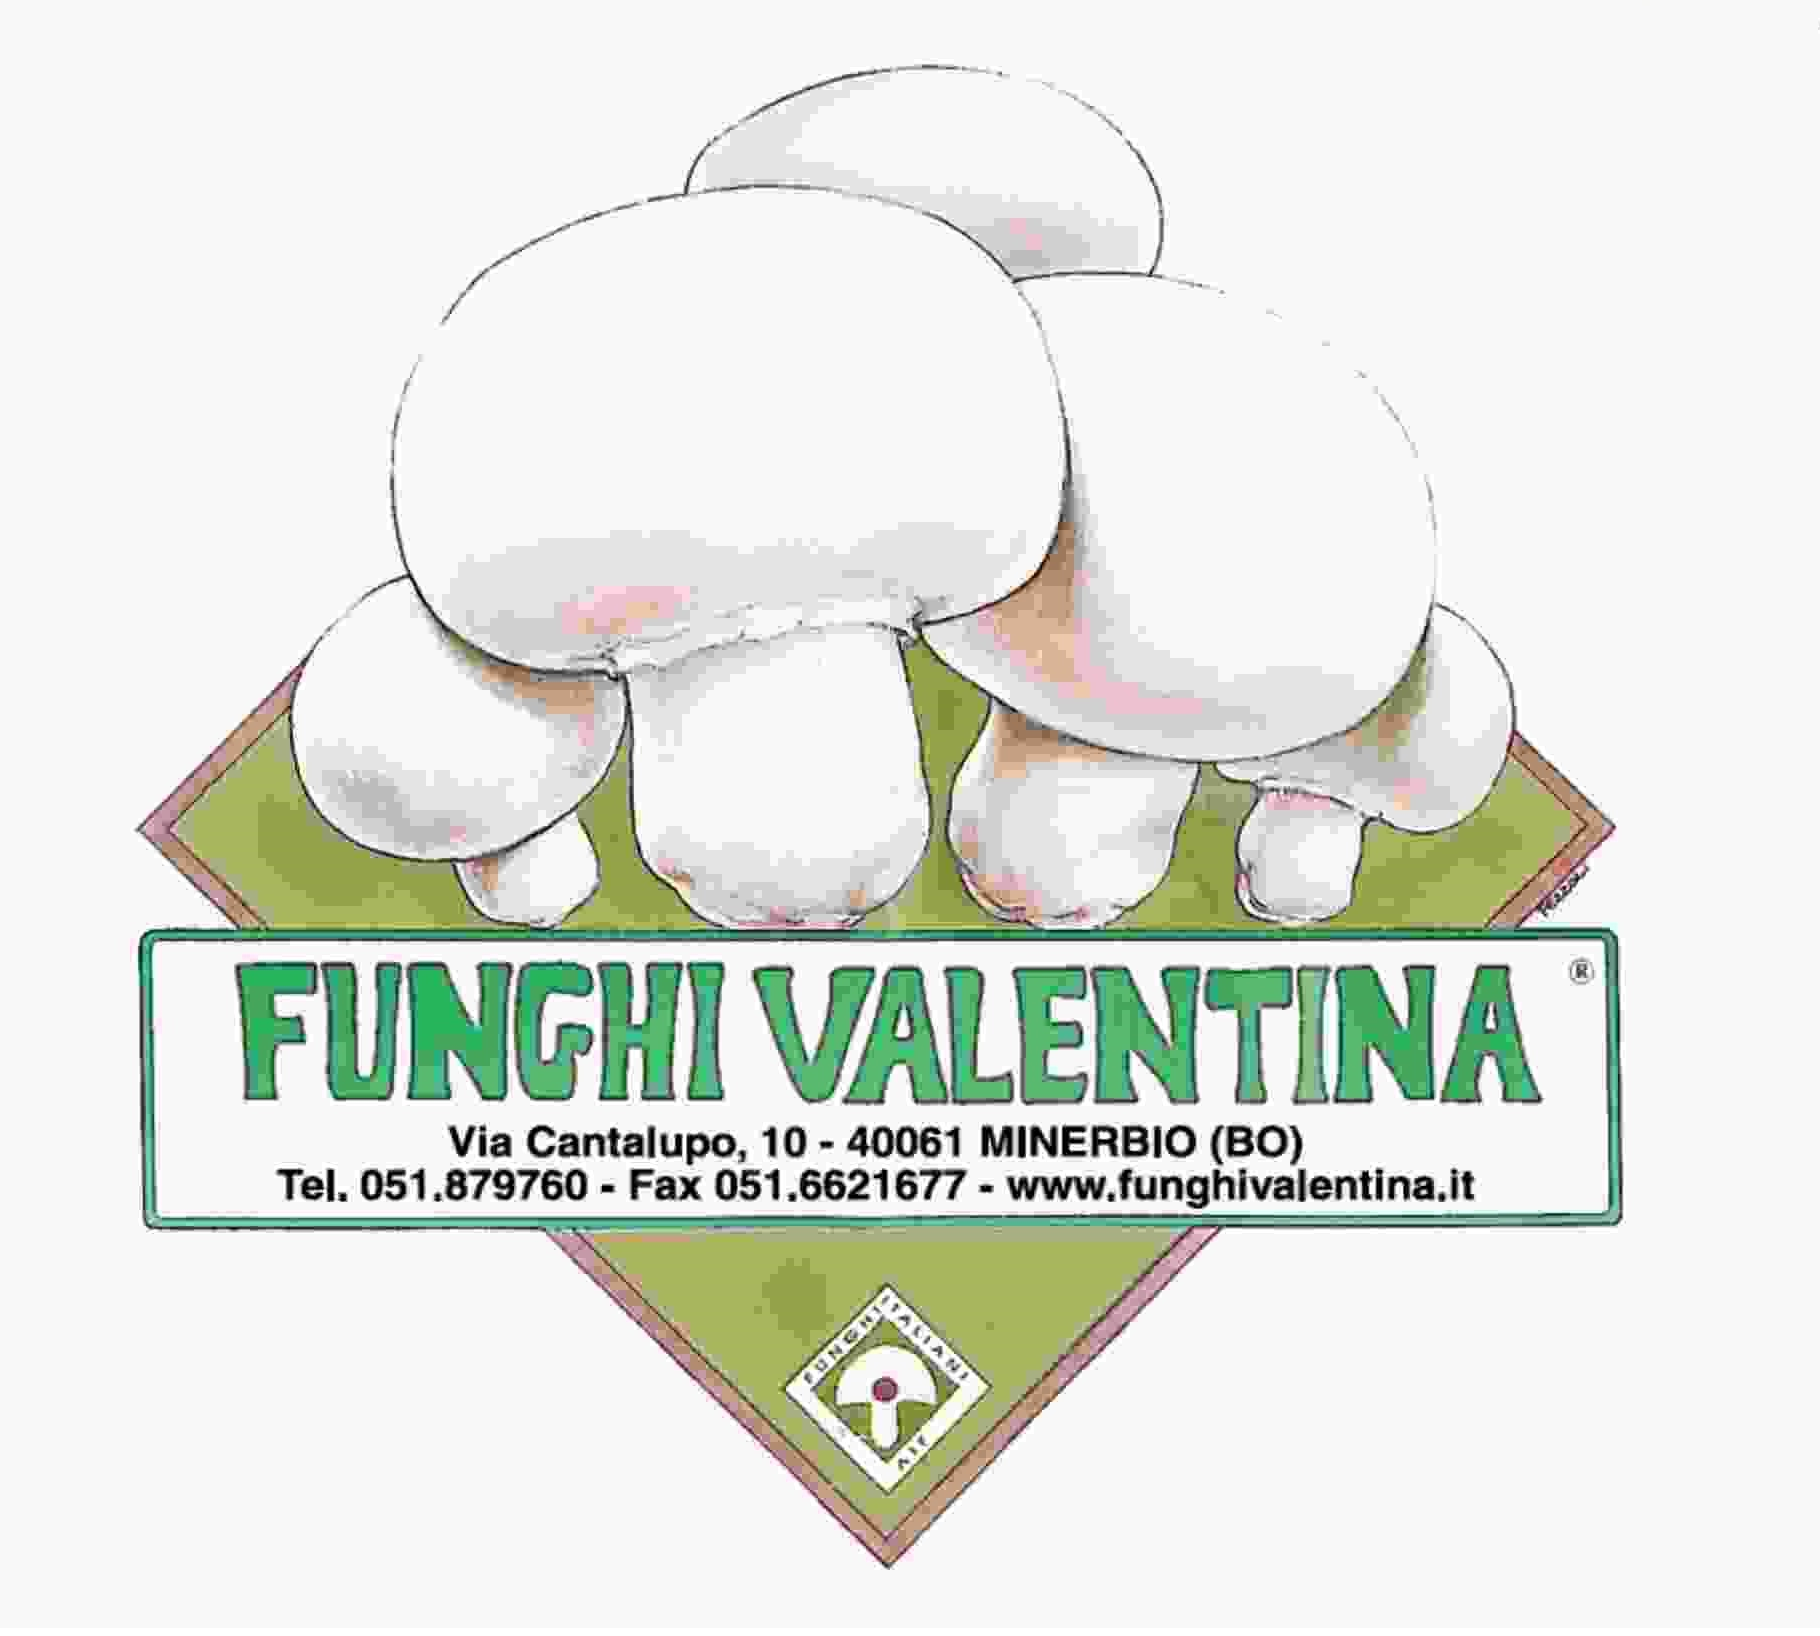 FUNGHI VALENTINA – Emerita Confraternita della Patata di Bologna